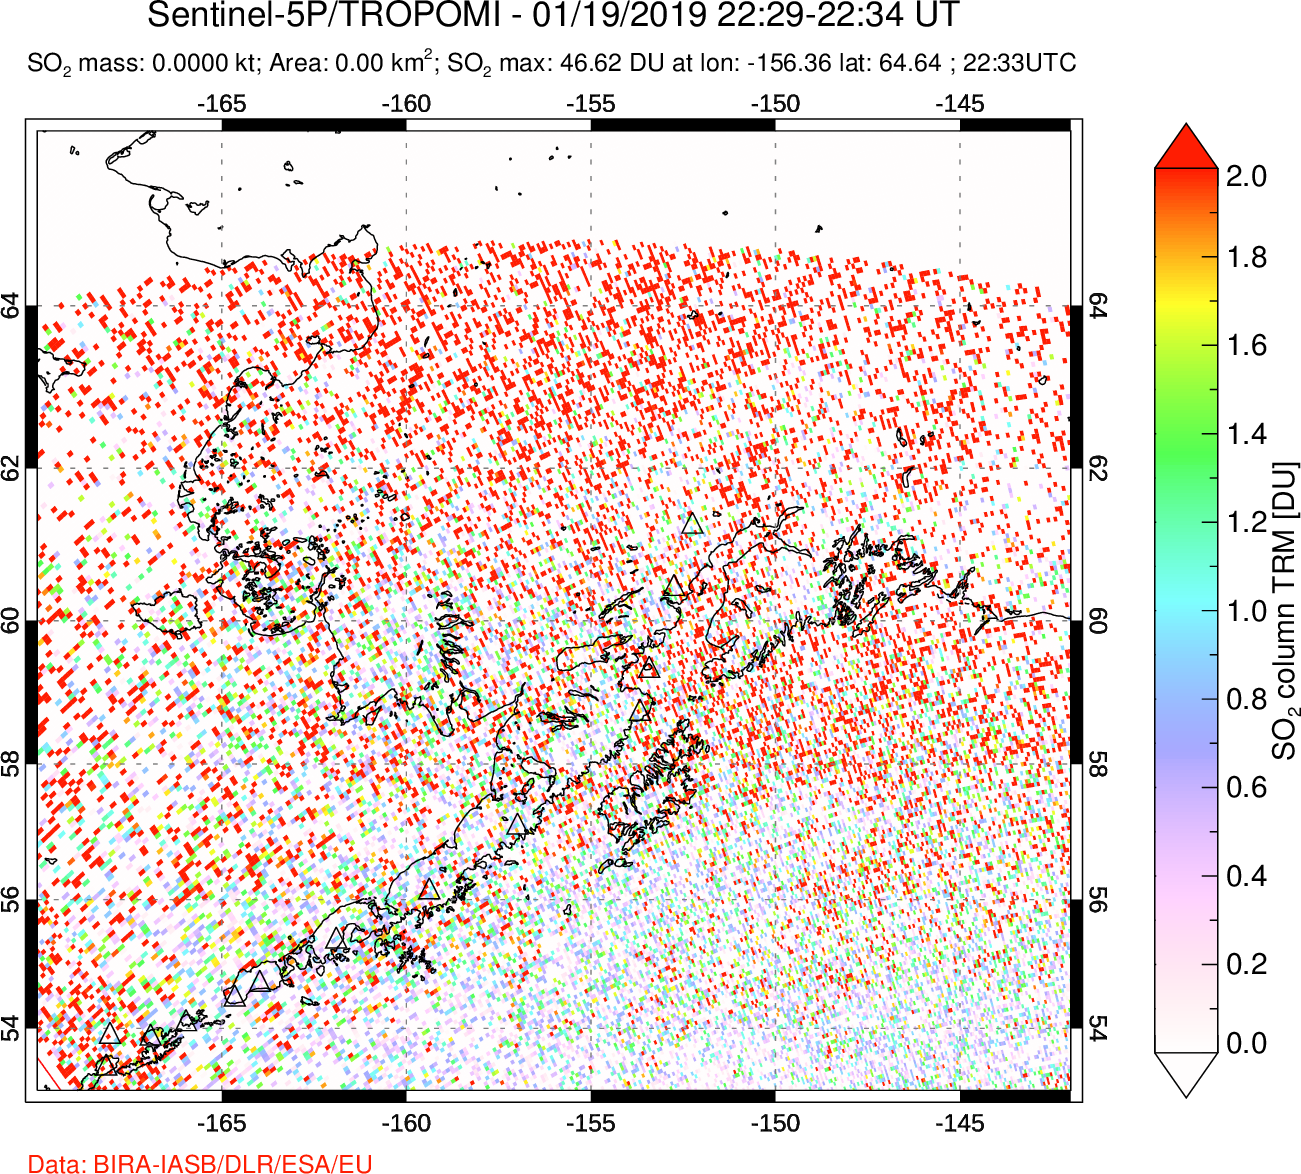 A sulfur dioxide image over Alaska, USA on Jan 19, 2019.